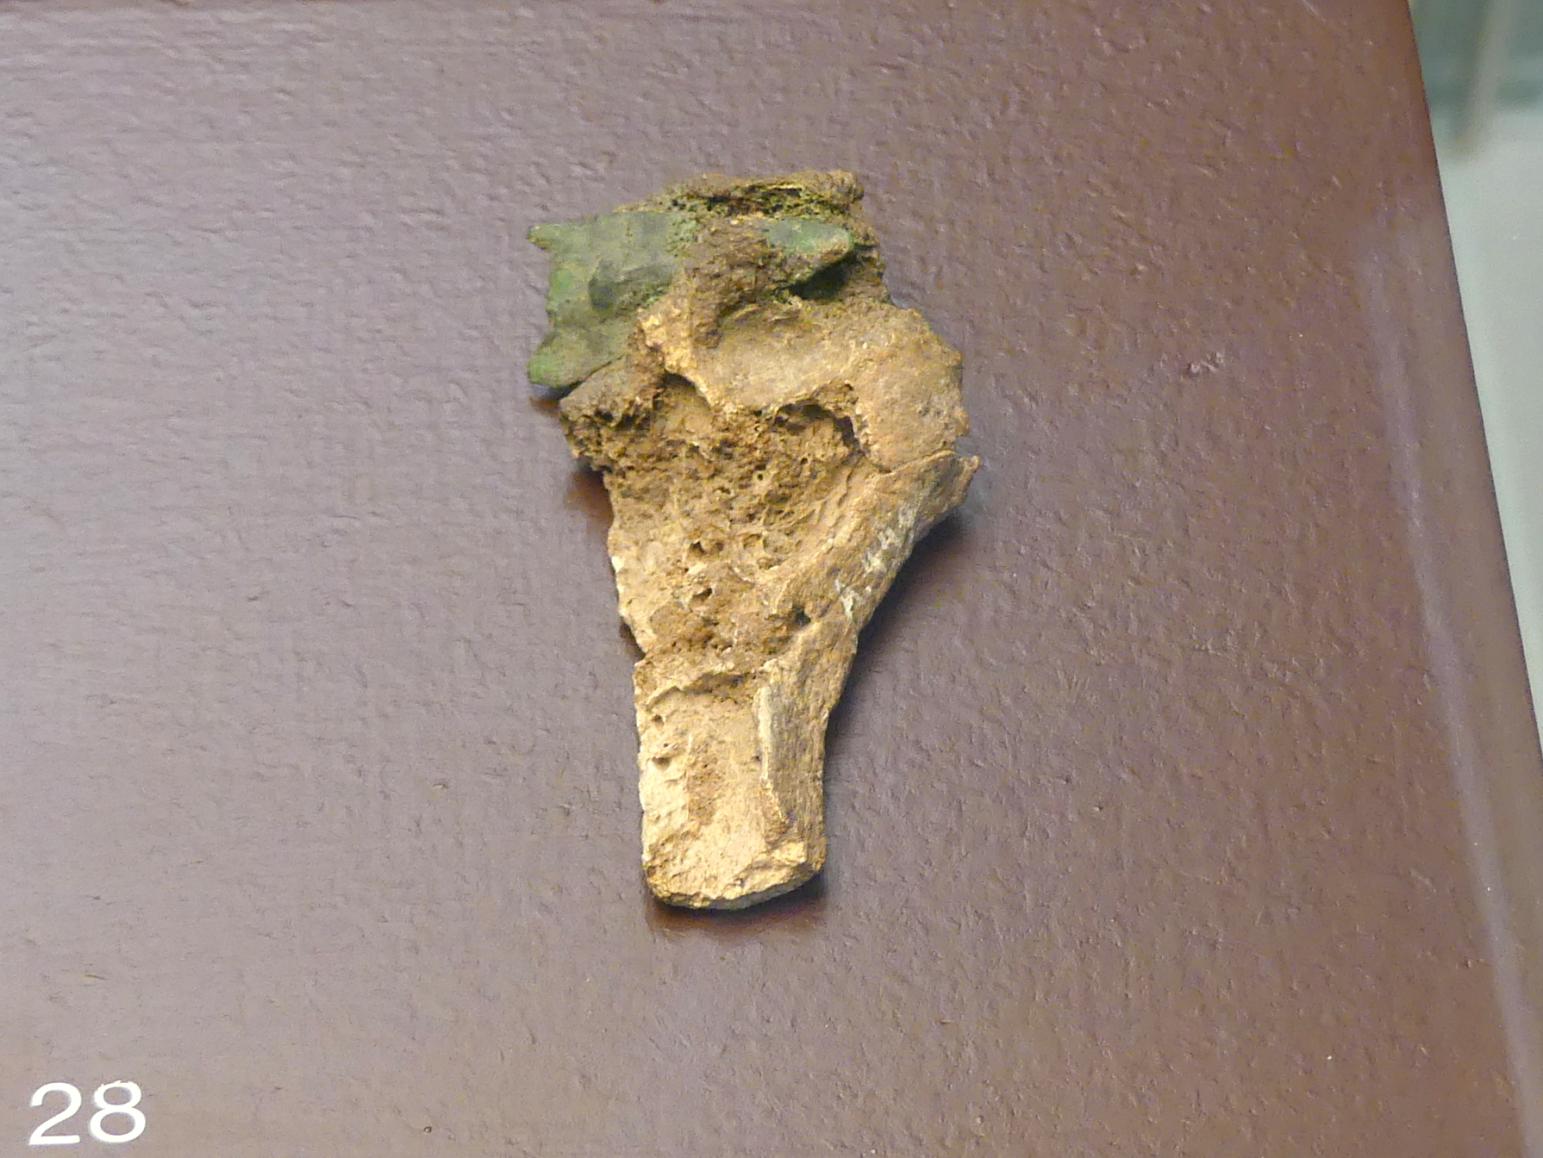 Oberarmknochen mit eingeschossener Pfeilspitze, Mittlere Bronzezeit, 3000 - 1300 v. Chr., Späte (Jüngere) Bronzezeit, 1500 - 700 v. Chr.